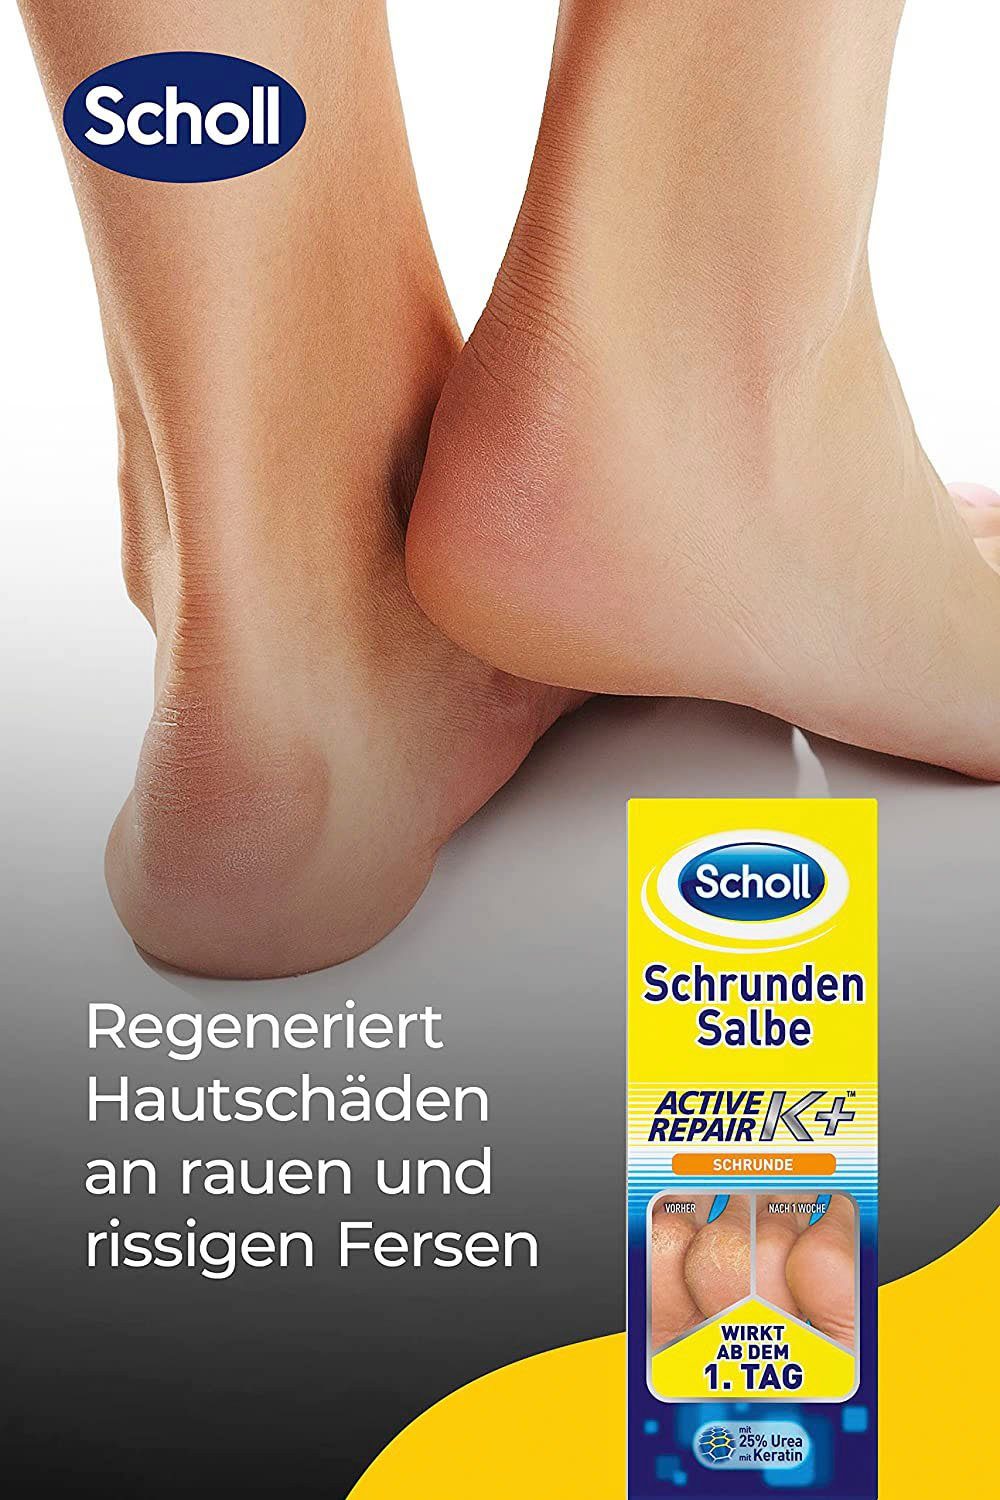 K+, Active Fußcreme Repair Schrunden Salbe Scholl